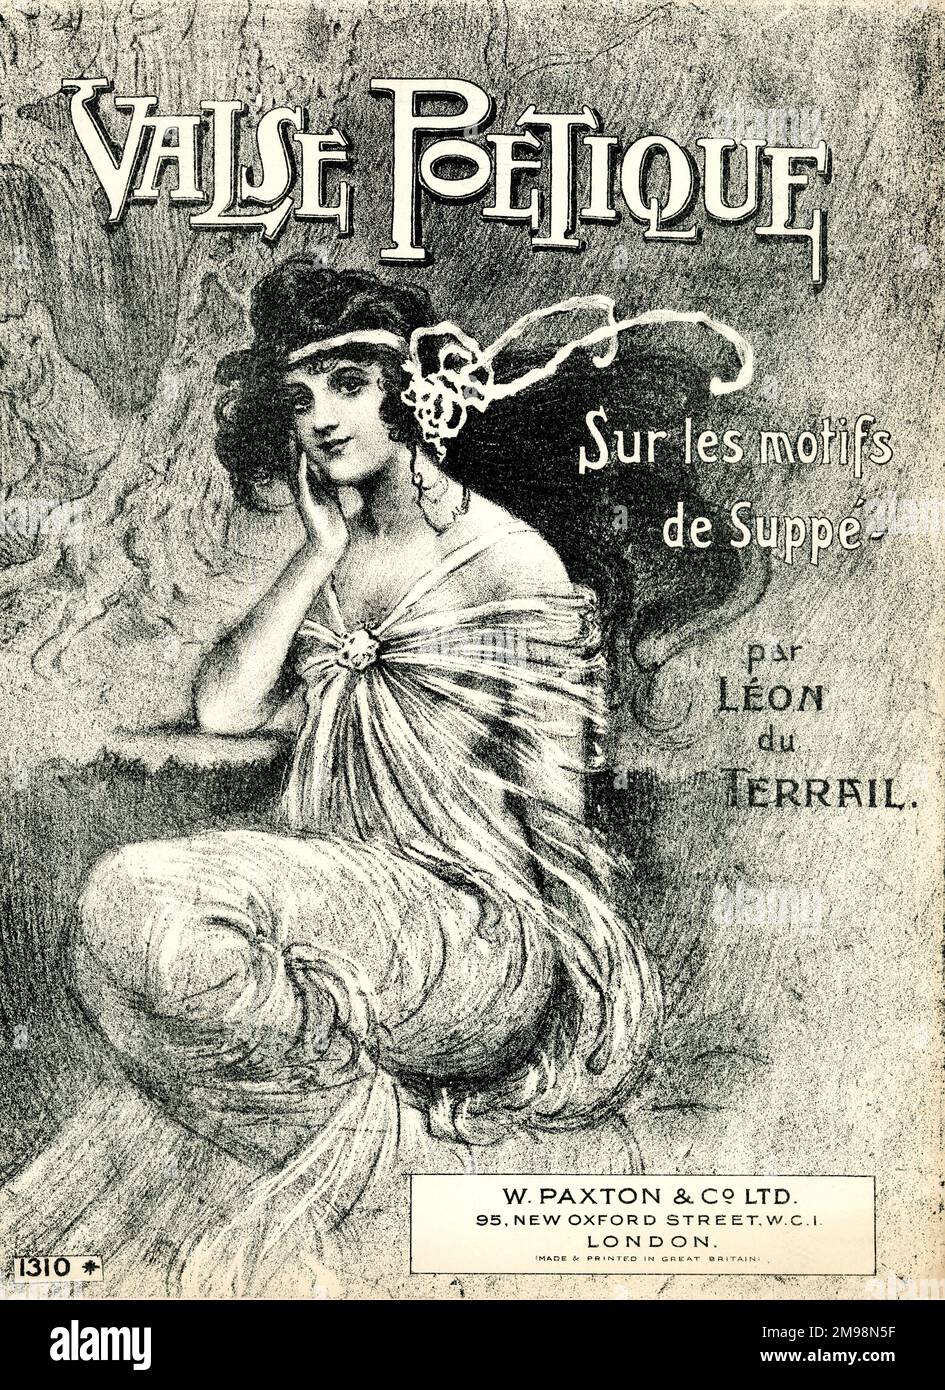 Music cover, Valse Poetique sur les motifs de Suppe, by Leon du Terrail. Stock Photo